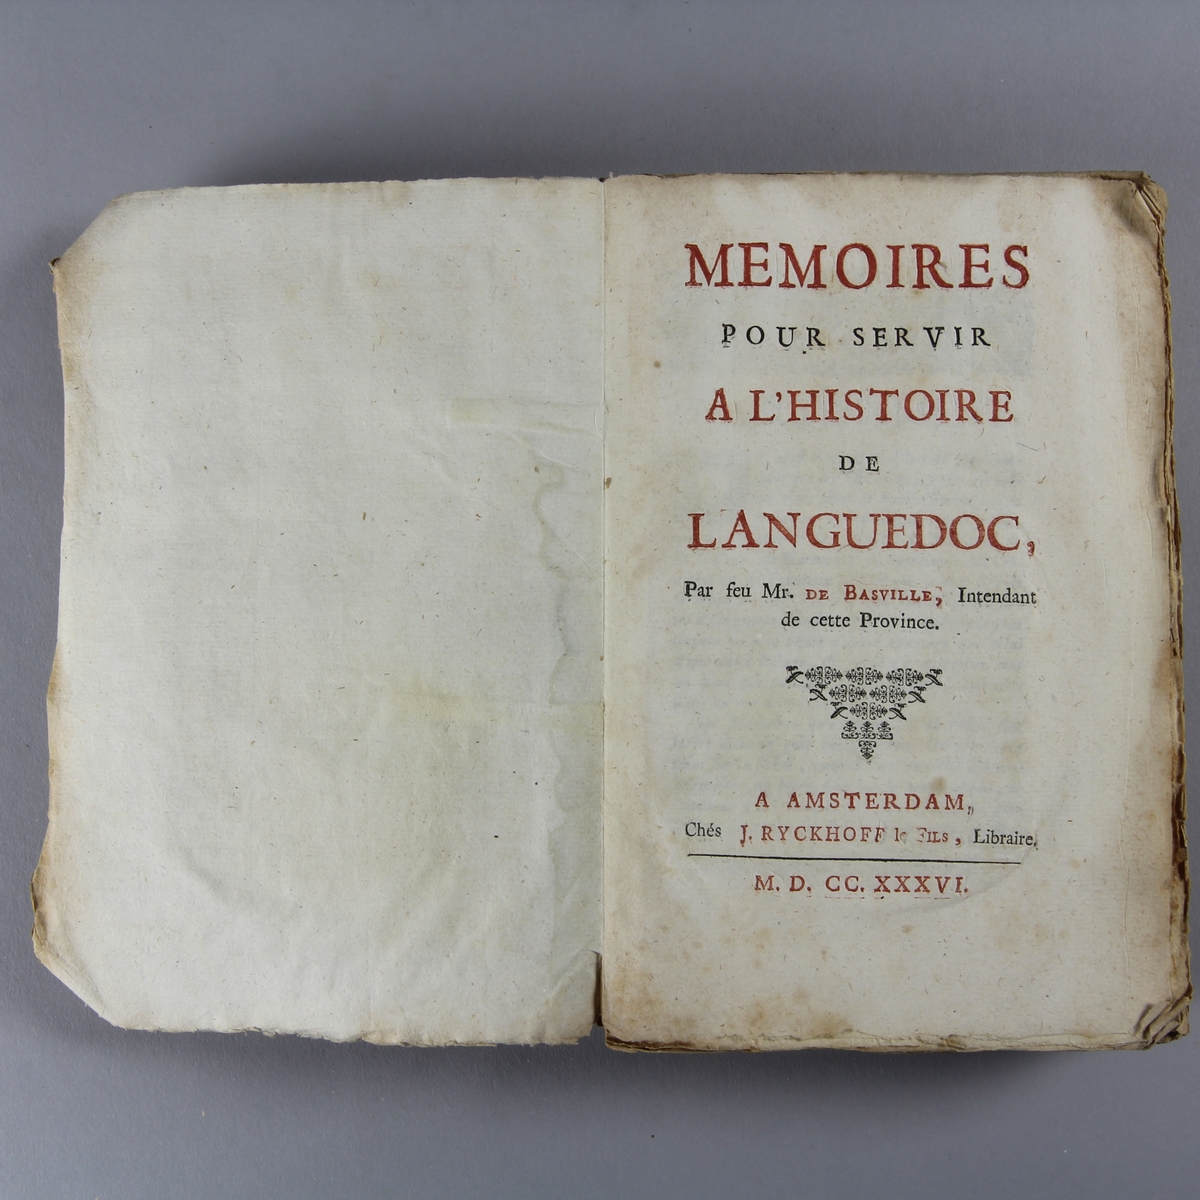 Bok, häftad "Mémoires pour servir à l´histoire de Languedoc". Pärmar av marmorerat papper, oskuret snitt.